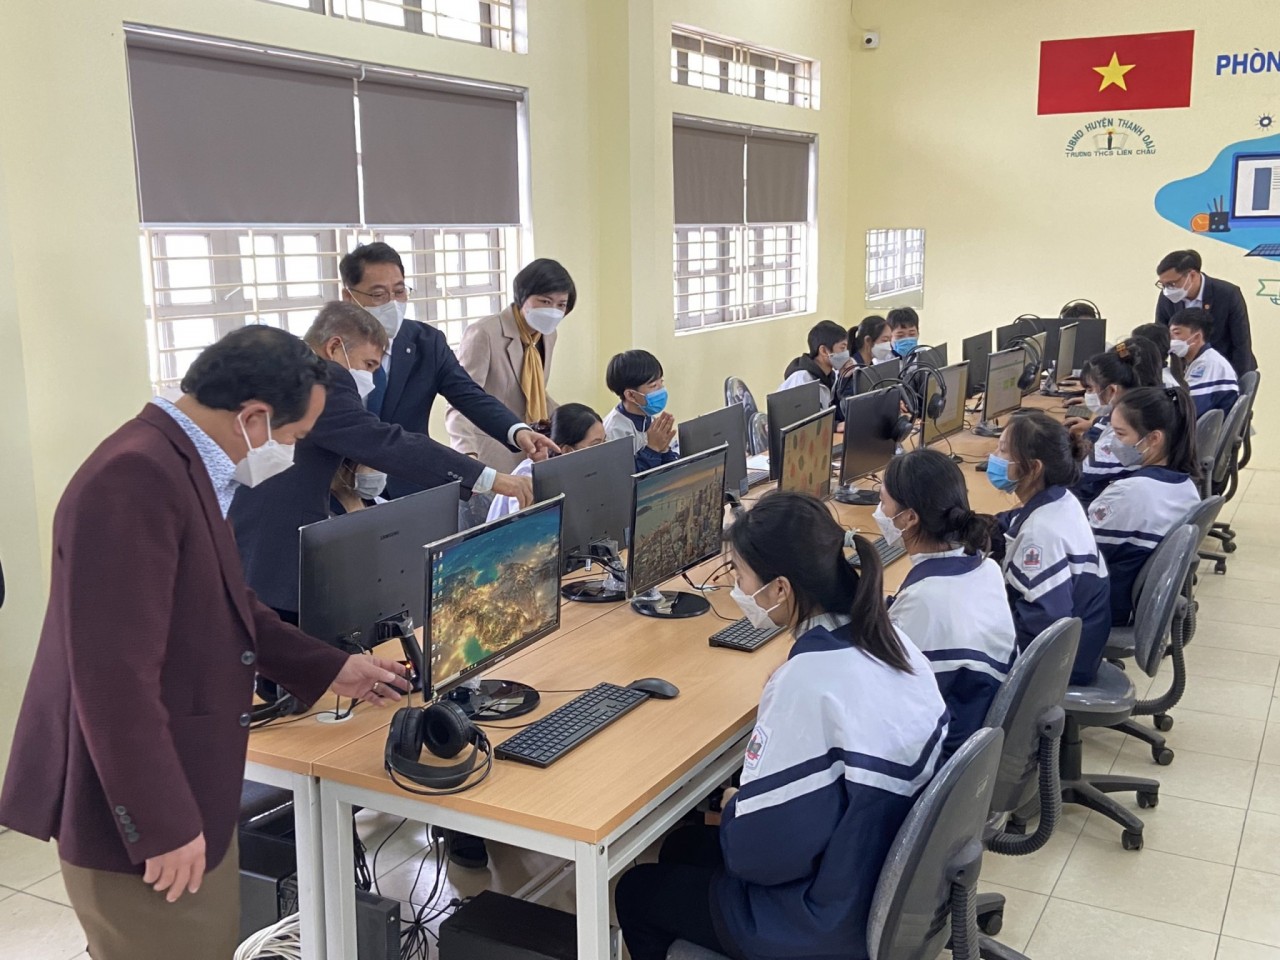 1 phòng học máy tính hiện đại, đồng bộ trị giá 550 triệu đồng cho Trường THCS Liên Châu huyện Thanh Oai.